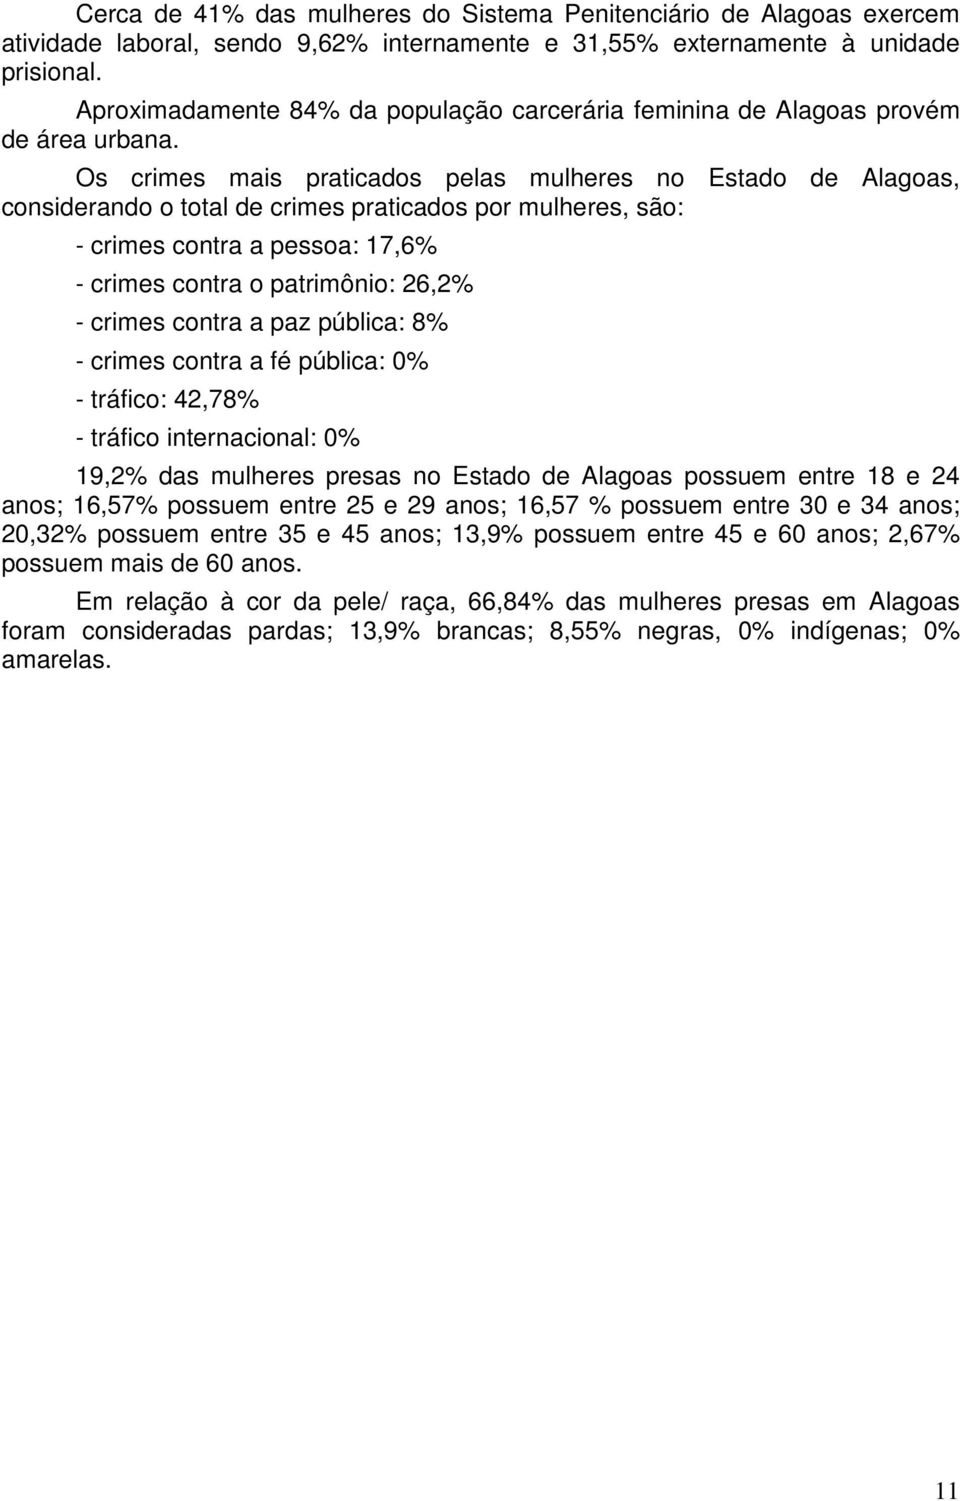 Os crimes mais praticados pelas mulheres no Estado de Alagoas, considerando o total de crimes praticados por mulheres, são: - crimes contra a pessoa: 17,6% - crimes contra o patrimônio: 26,2% -